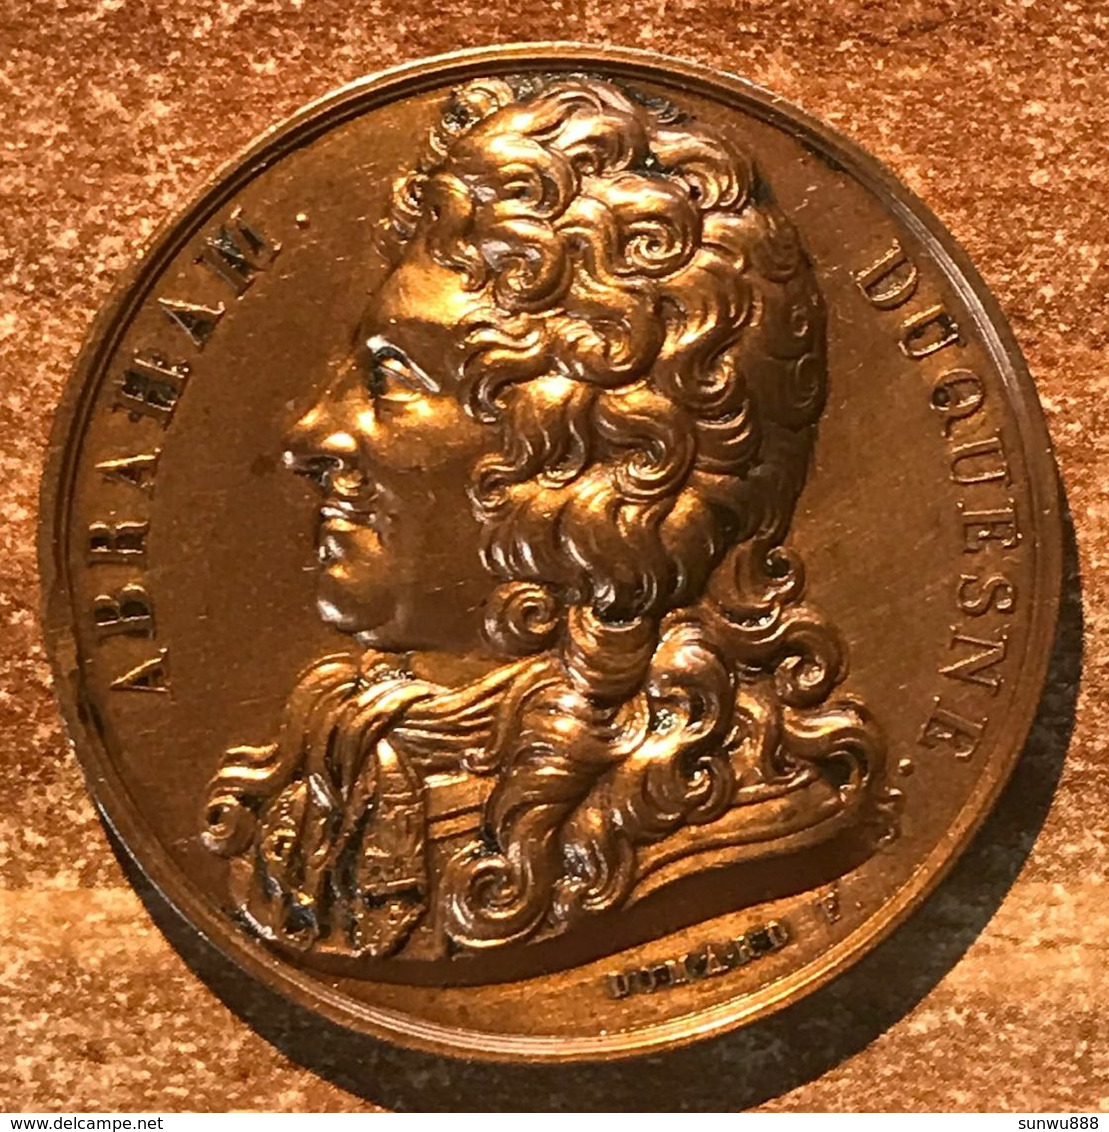 Médaille Bronze Abraham Duquesne 1826 Domard P, Très Bel Exemplaire. Coup à 8 Heures (prix Fixe, Recommandé Inclus) - Monarchia / Nobiltà